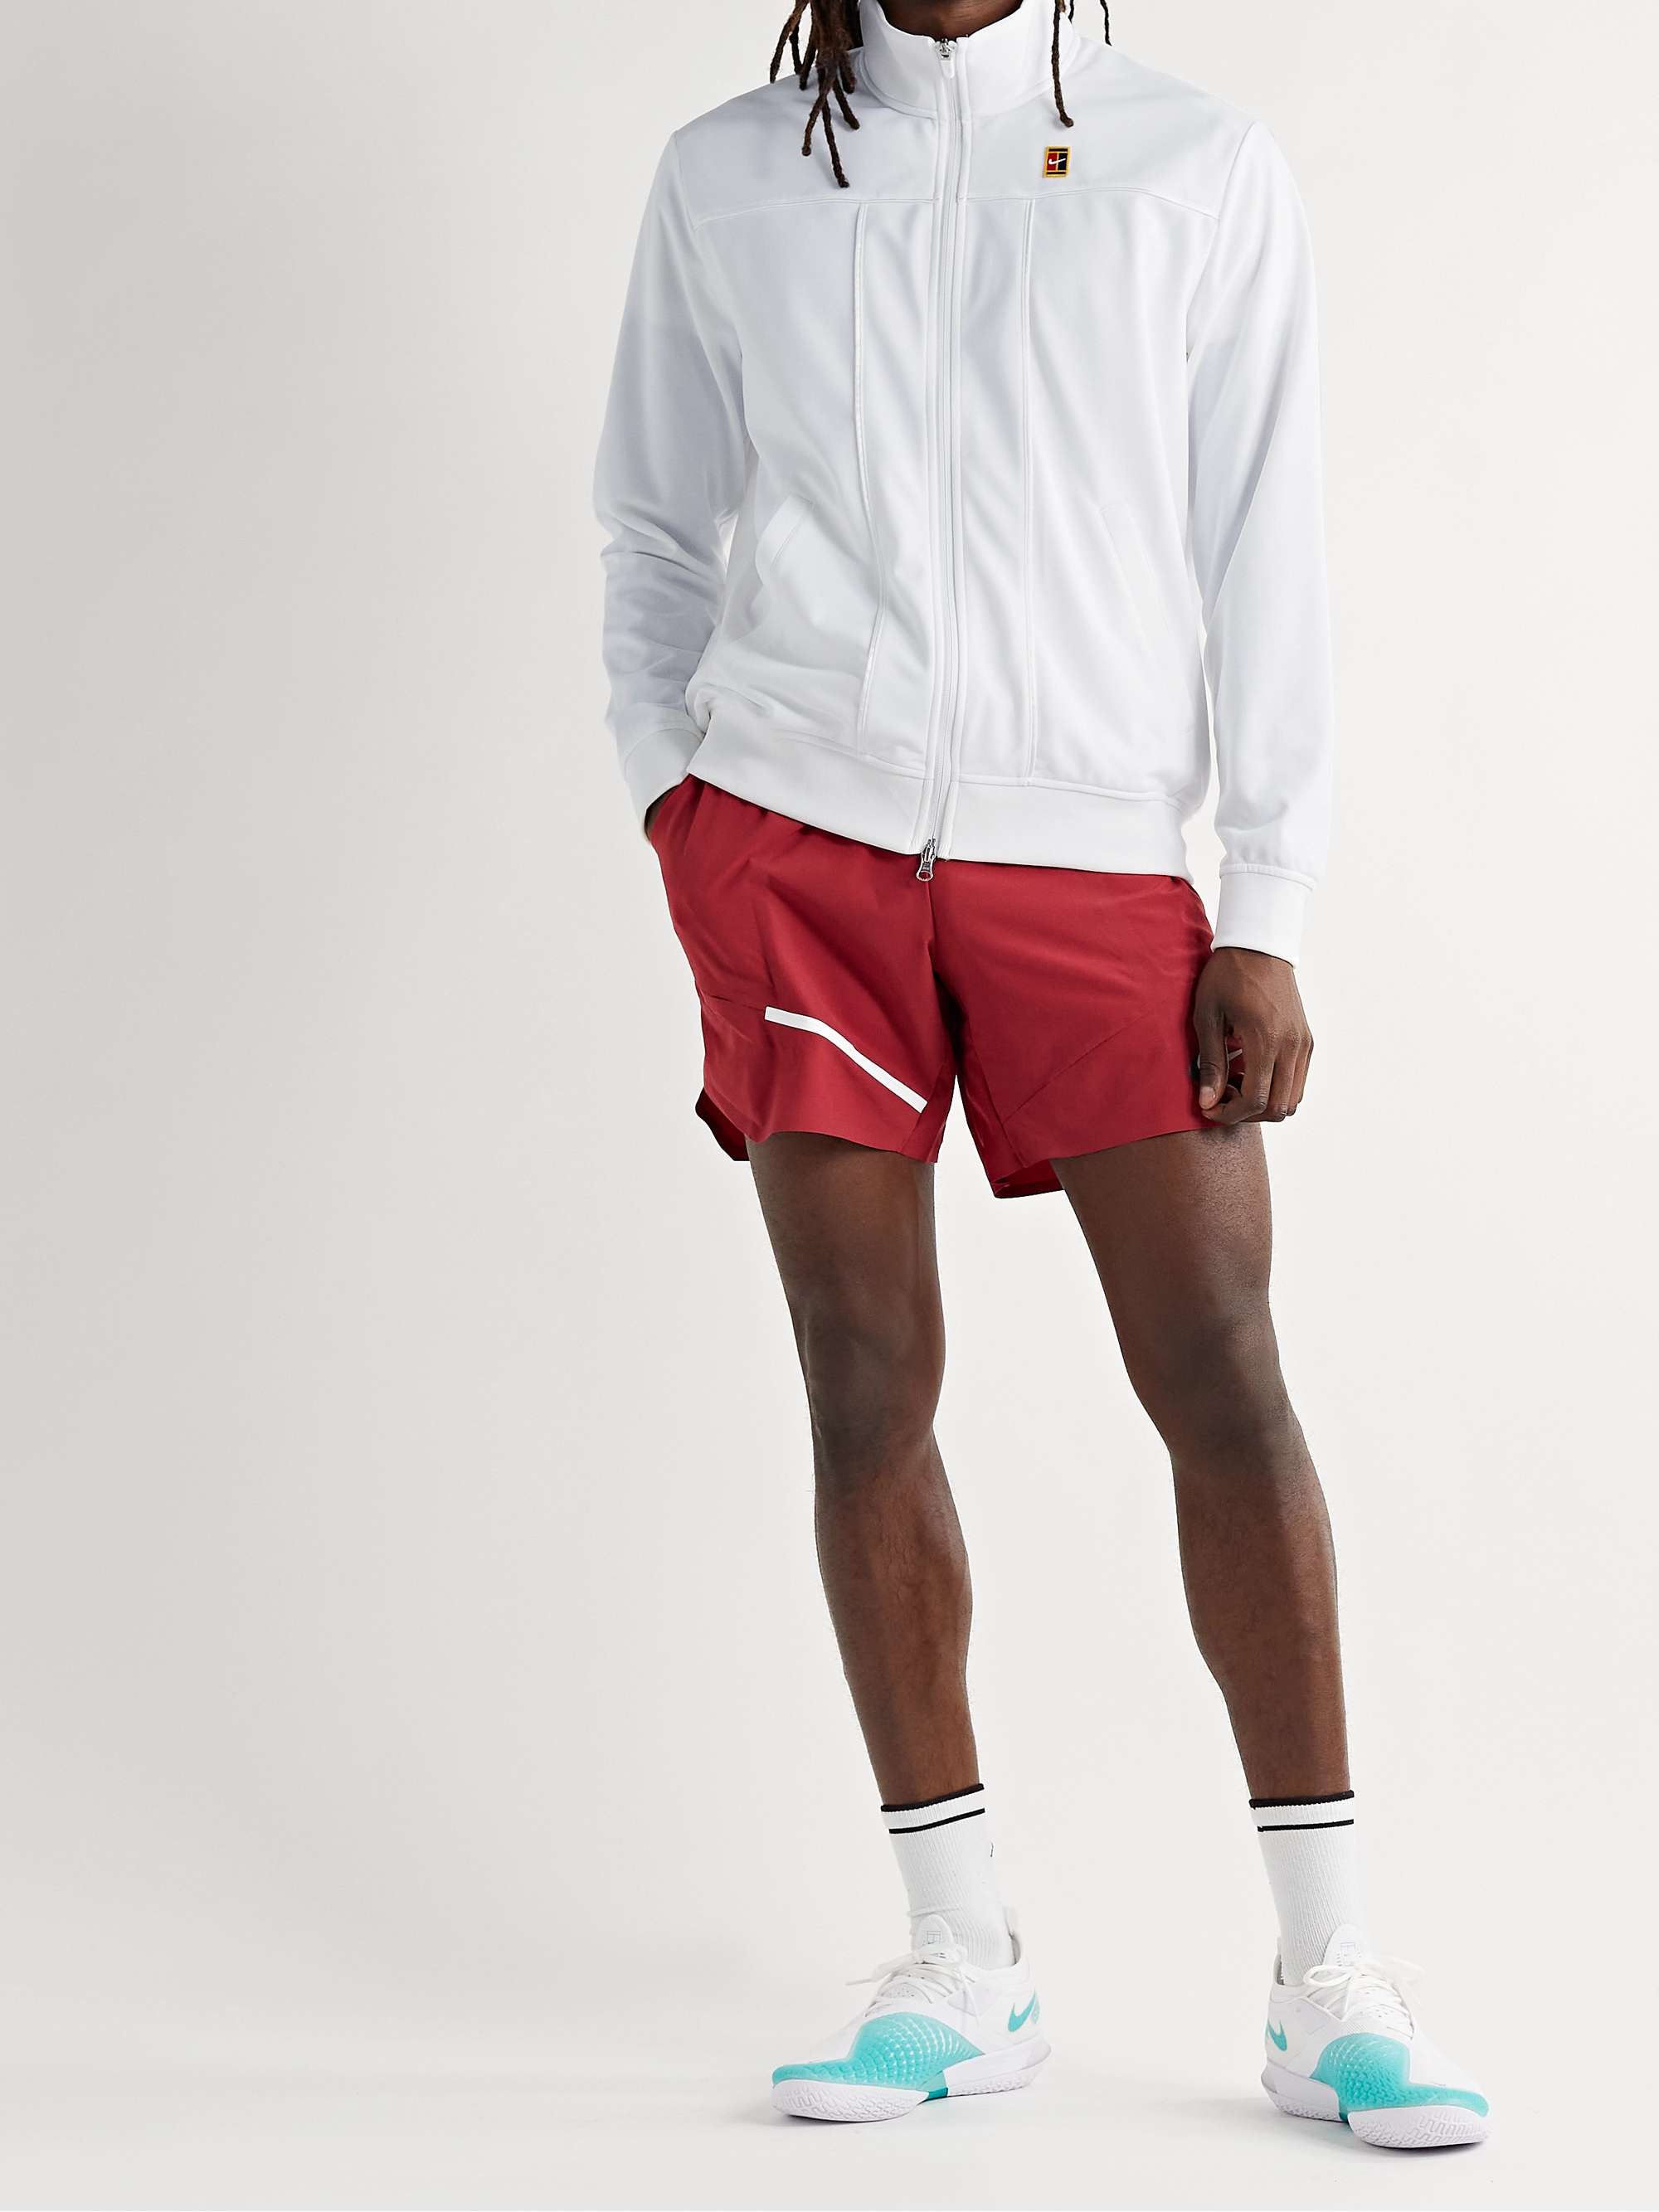 Nike Men's Sportswear Swoosh Tech Fleece Jogging Suit